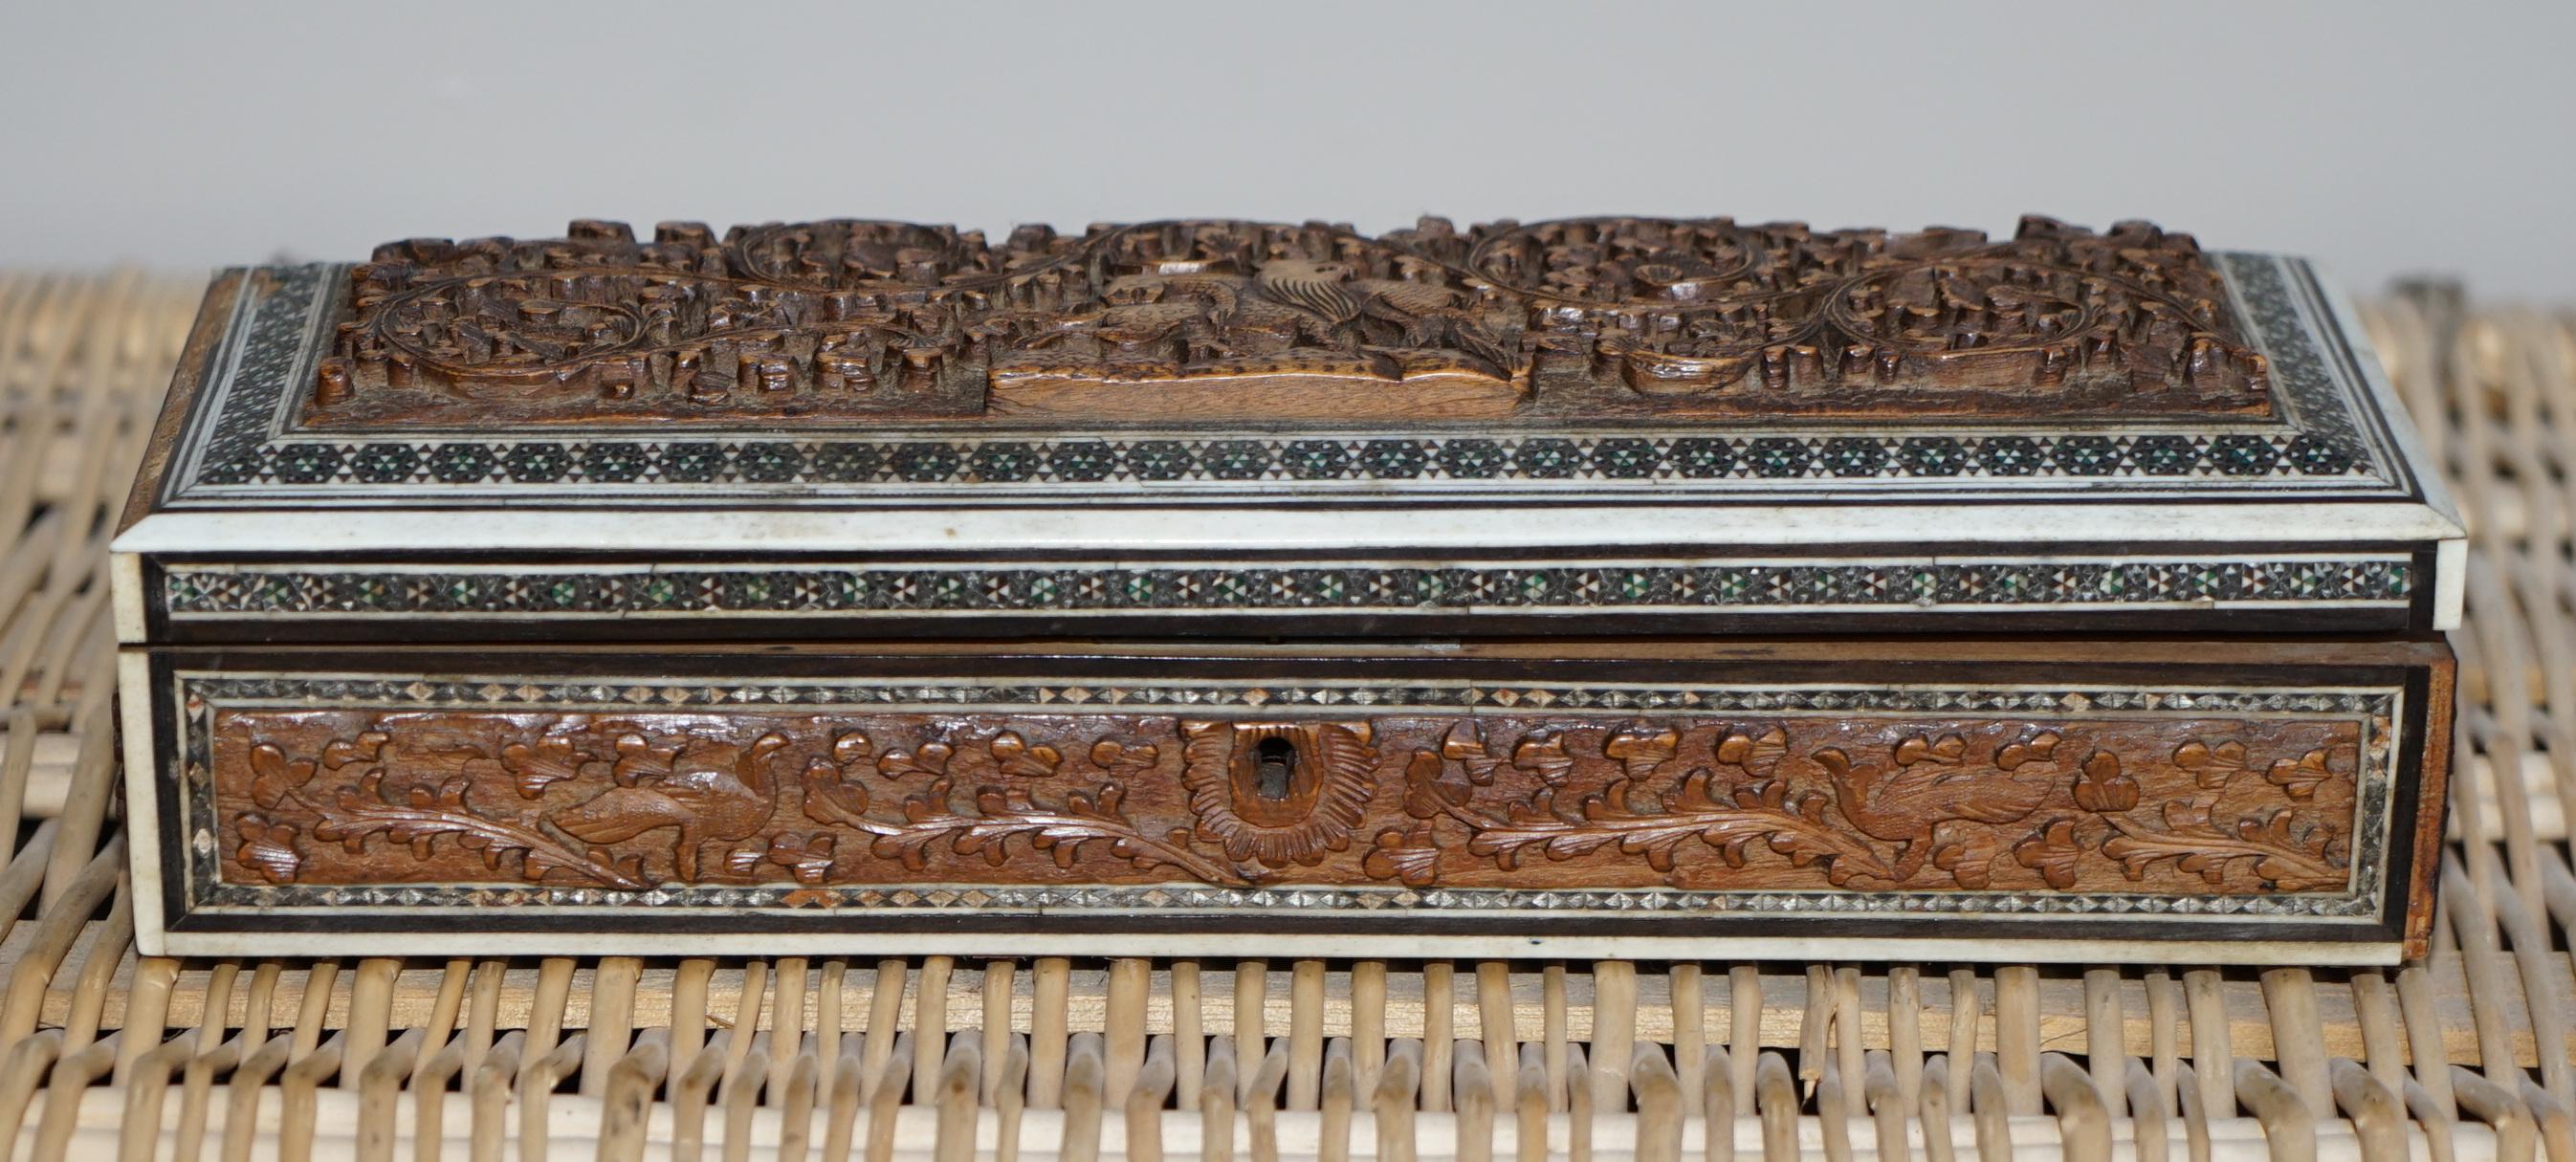 Nous sommes ravis de proposer à la vente cette jolie boîte anglo-indienne du XIXe siècle en bois de santal sculpté et incrusté de Vizagapatam.

Boîte anglo-indienne du milieu du XIXe siècle en bois de santal sculpté de Vizagapatam, avec